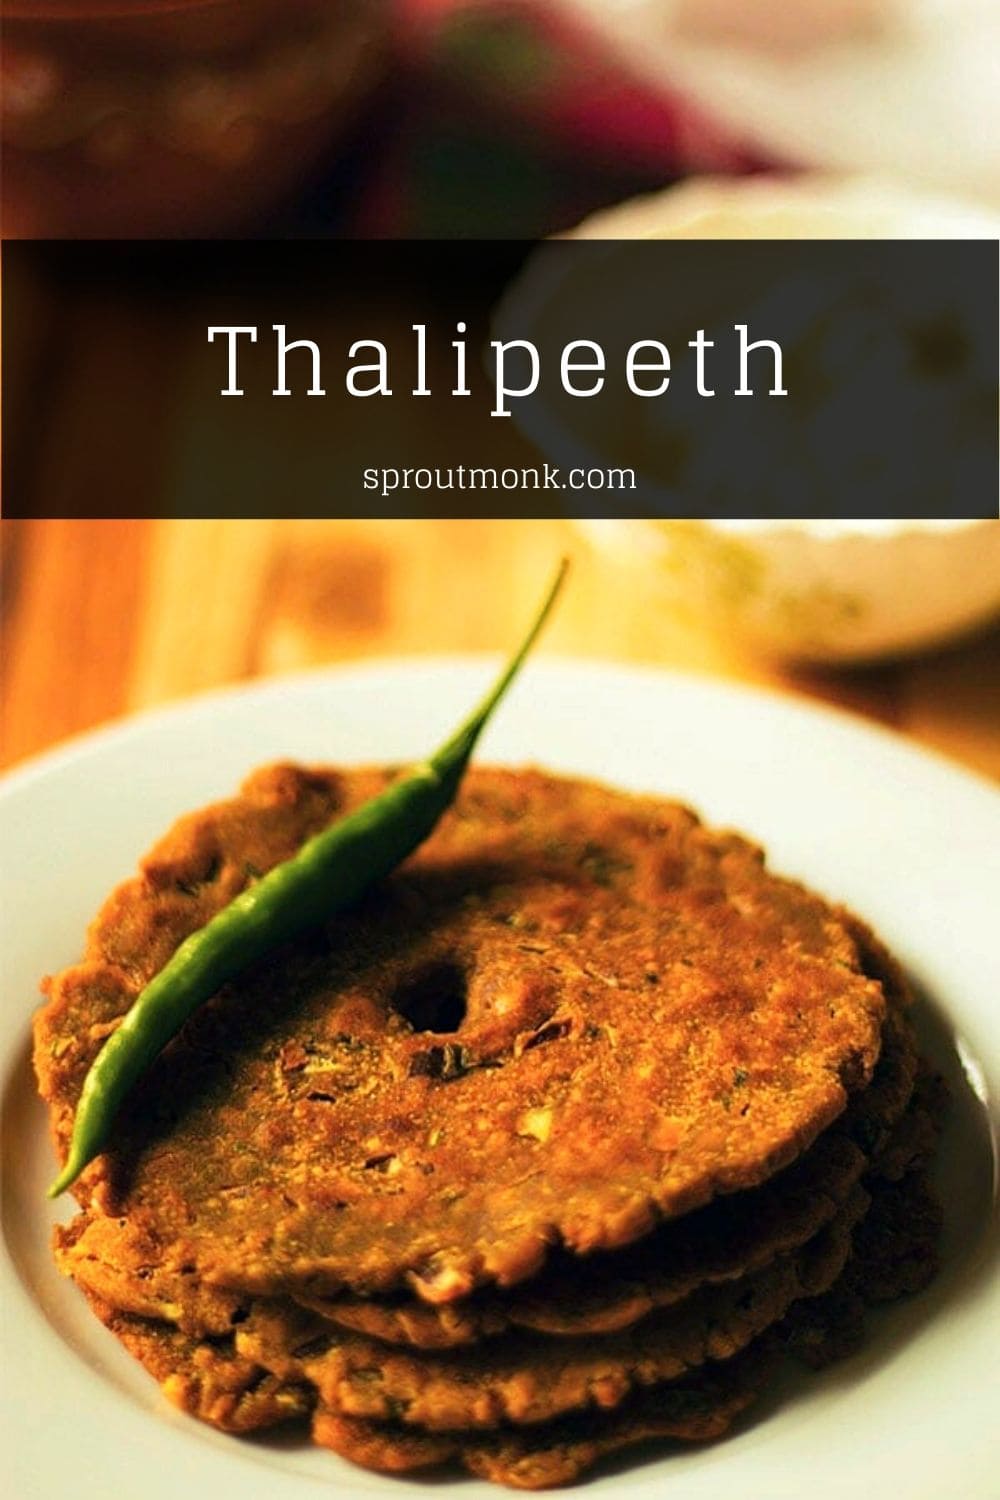 thalipeeth served in a plate